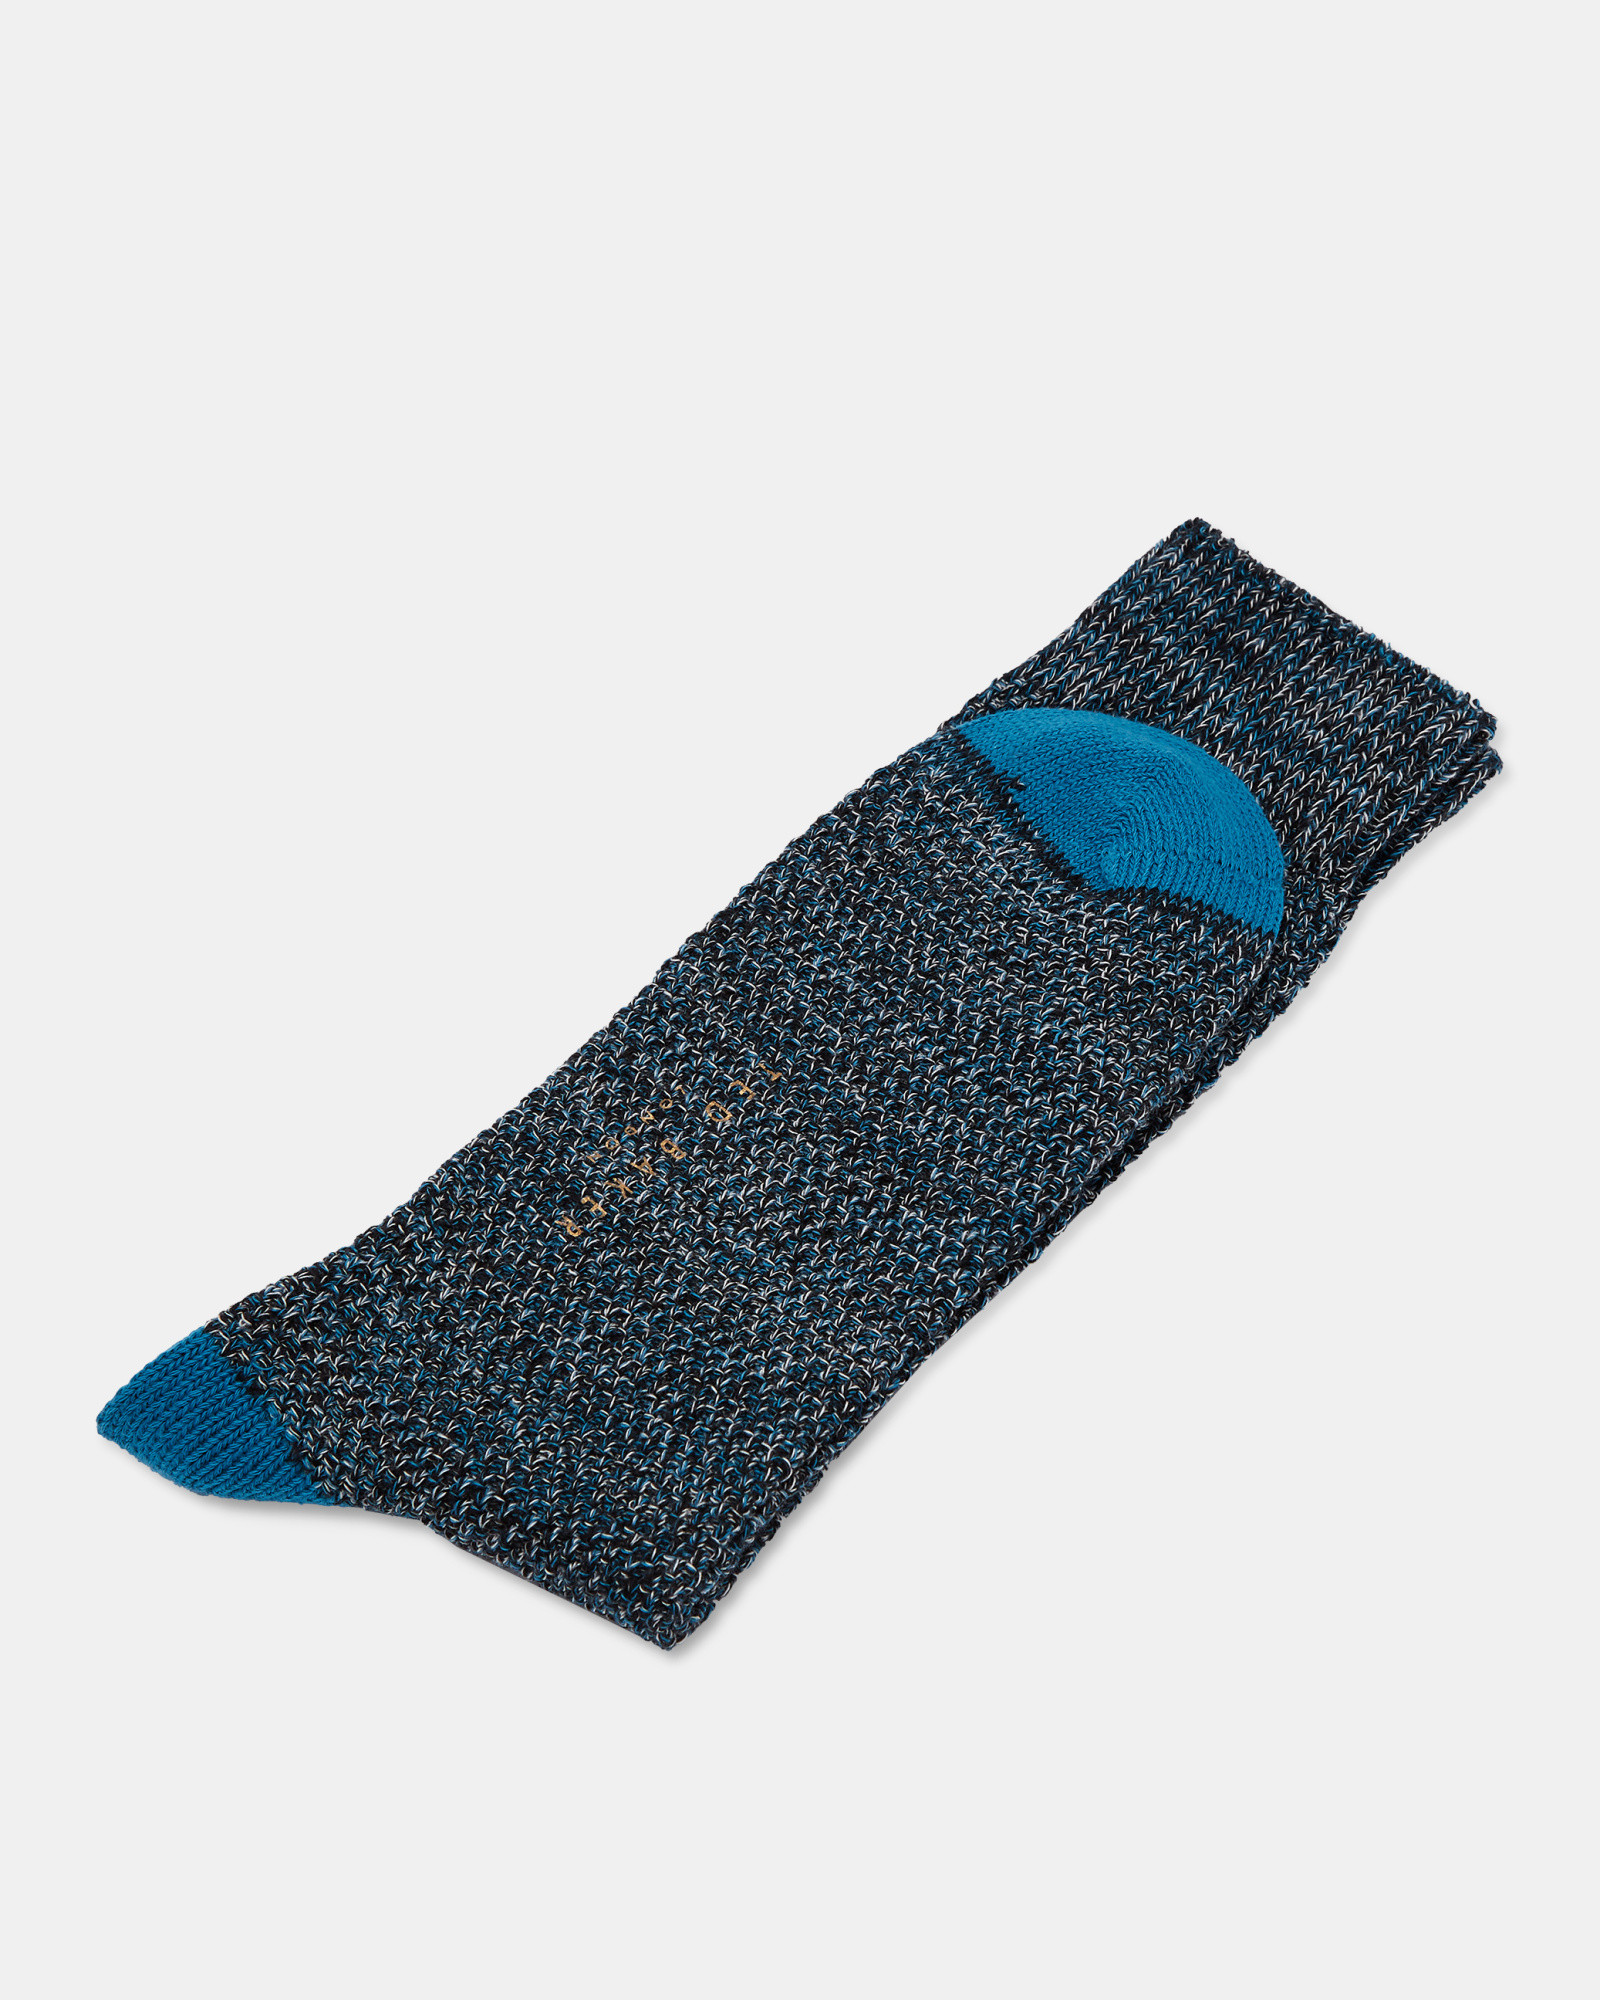 FORTI Spot print cotton socks